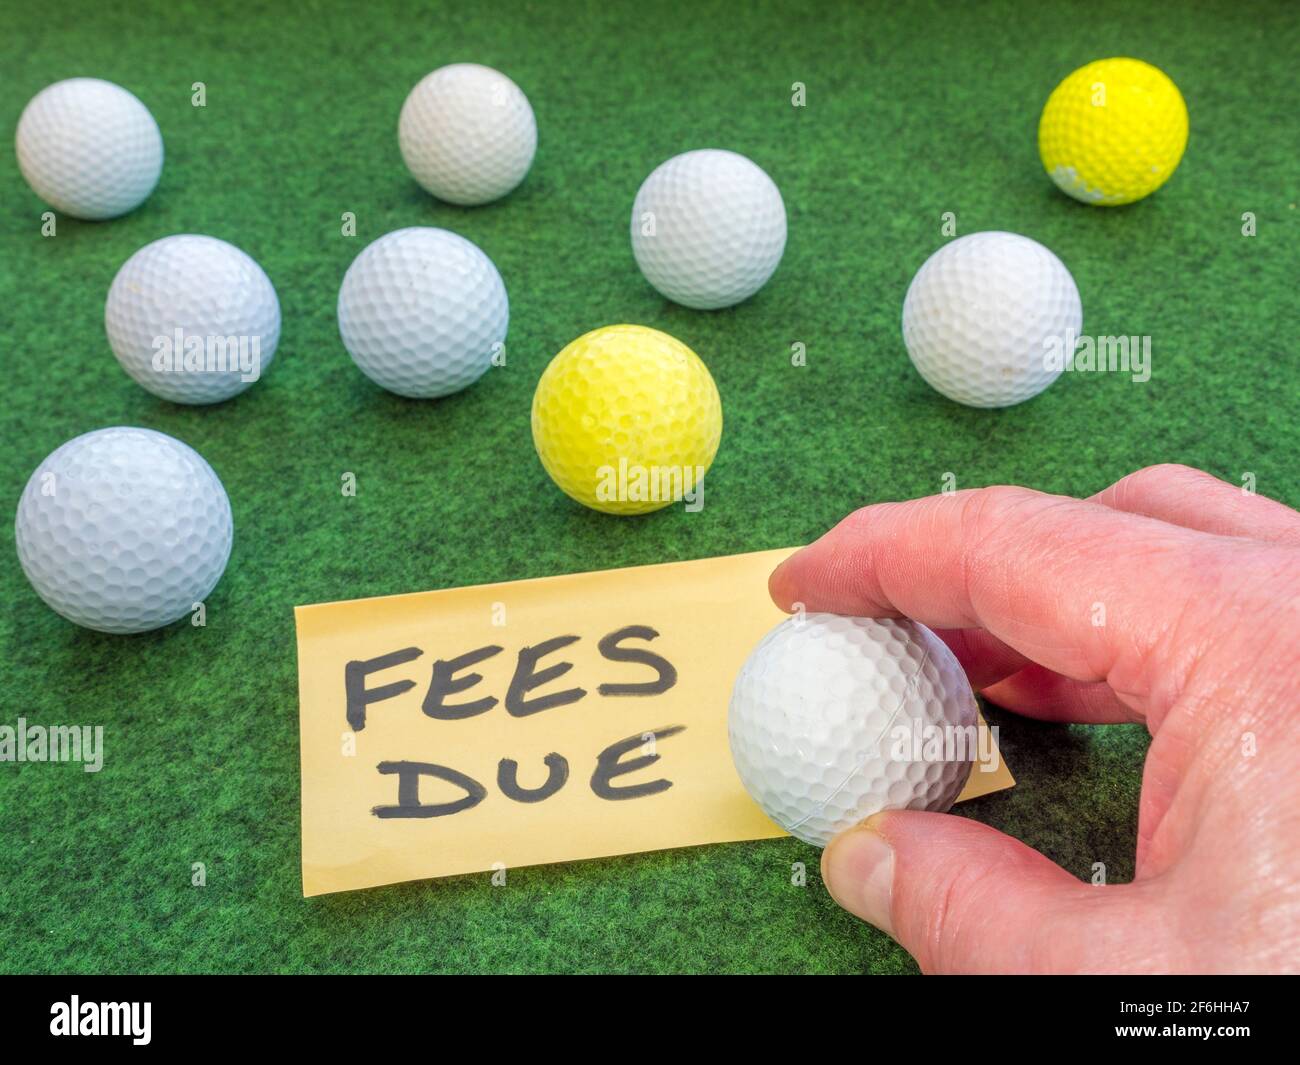 La main d’un homme tenant une balle de golf sur une note «taxes dues», entre autres balles de golf sur une surface verte. Concept de frais pour l'utilisation d'un club de golf / parcours. Banque D'Images